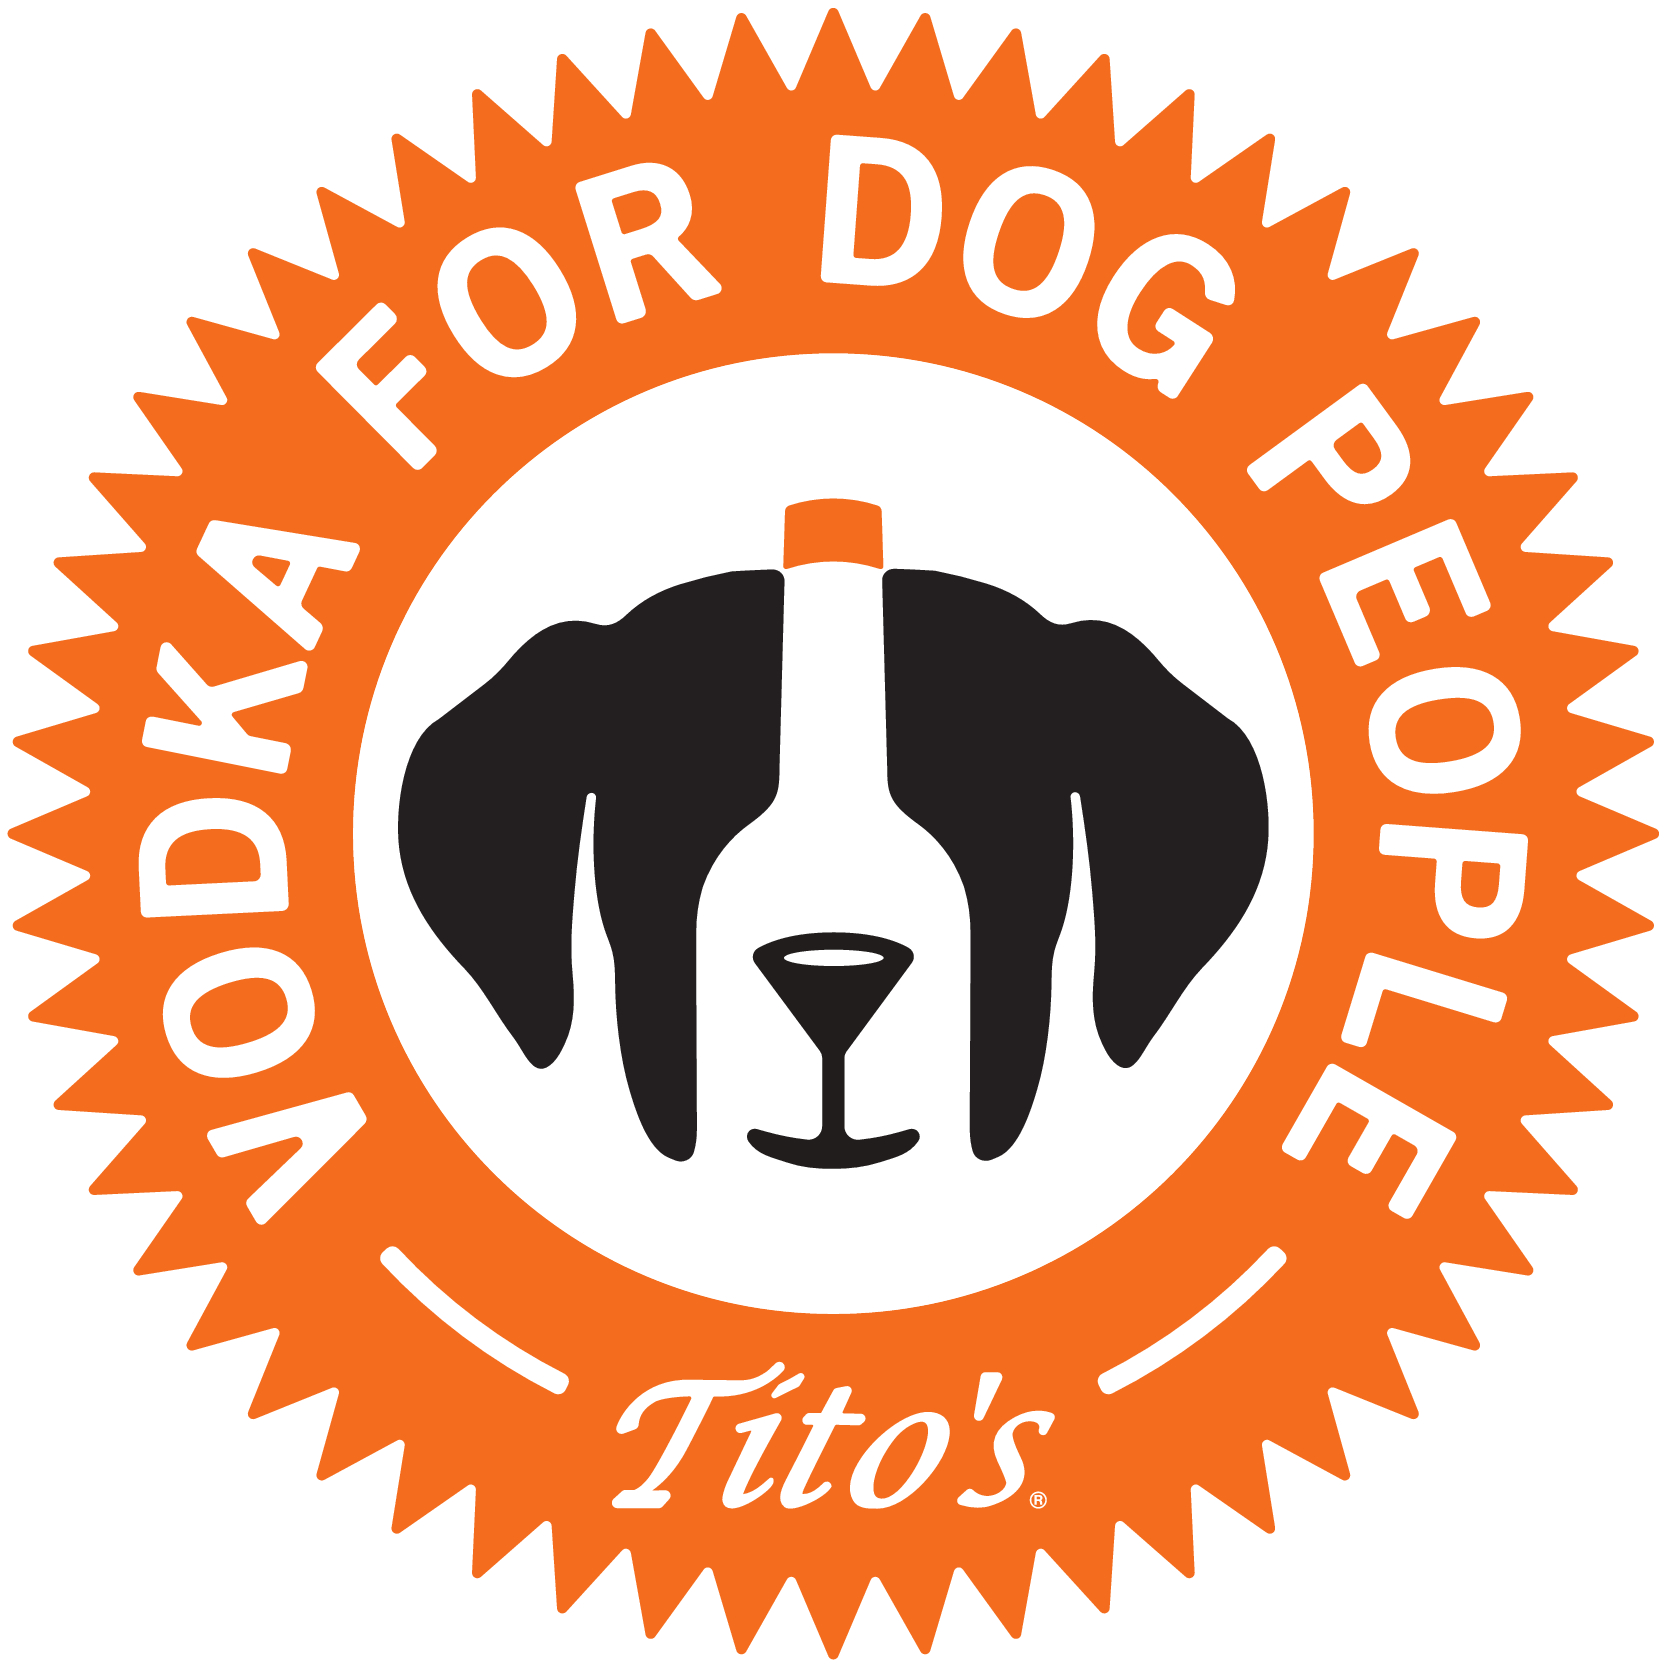 Vodka for Dog People Logo